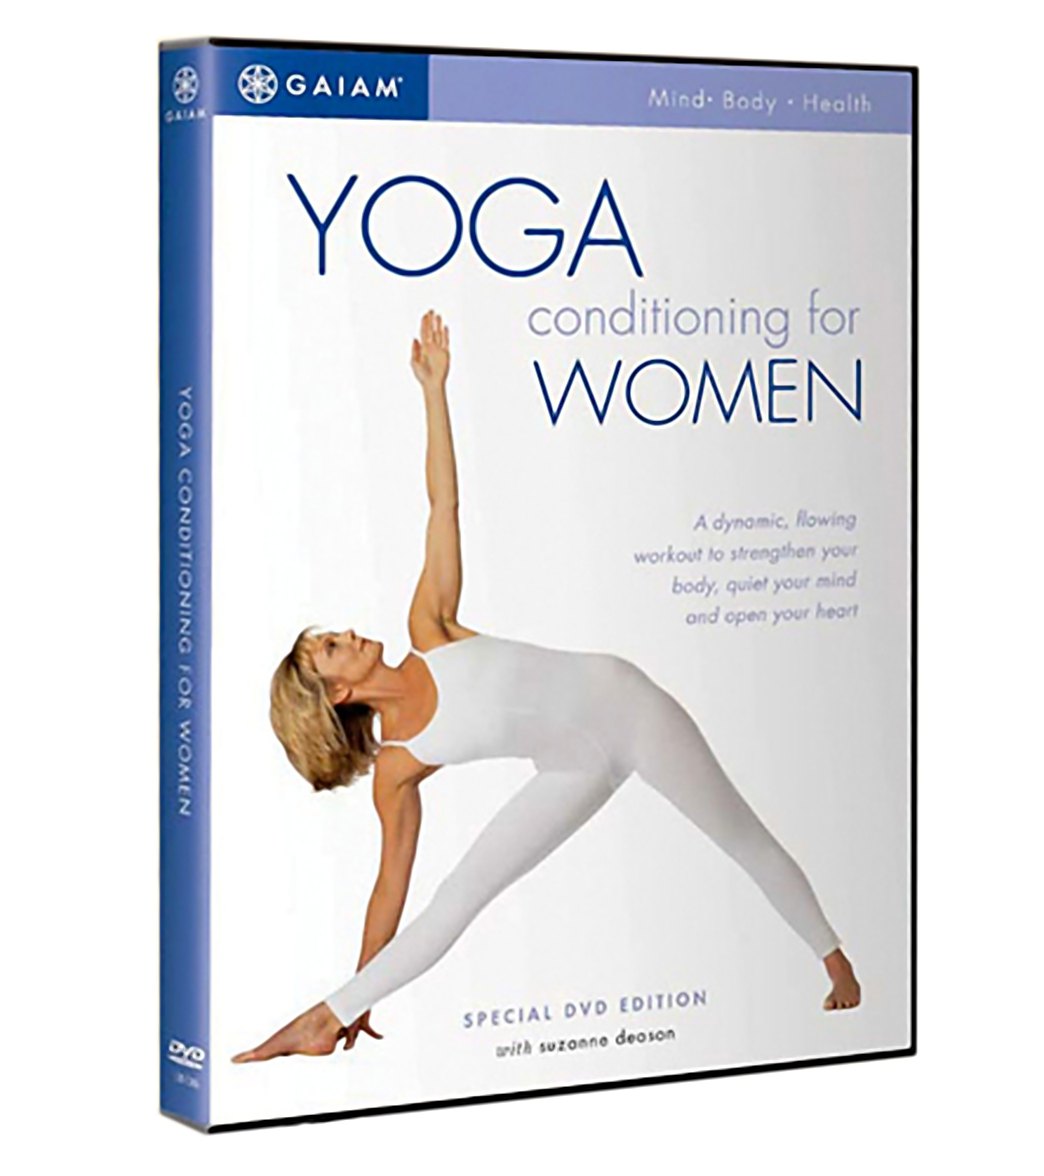 gaiam yoga dvd